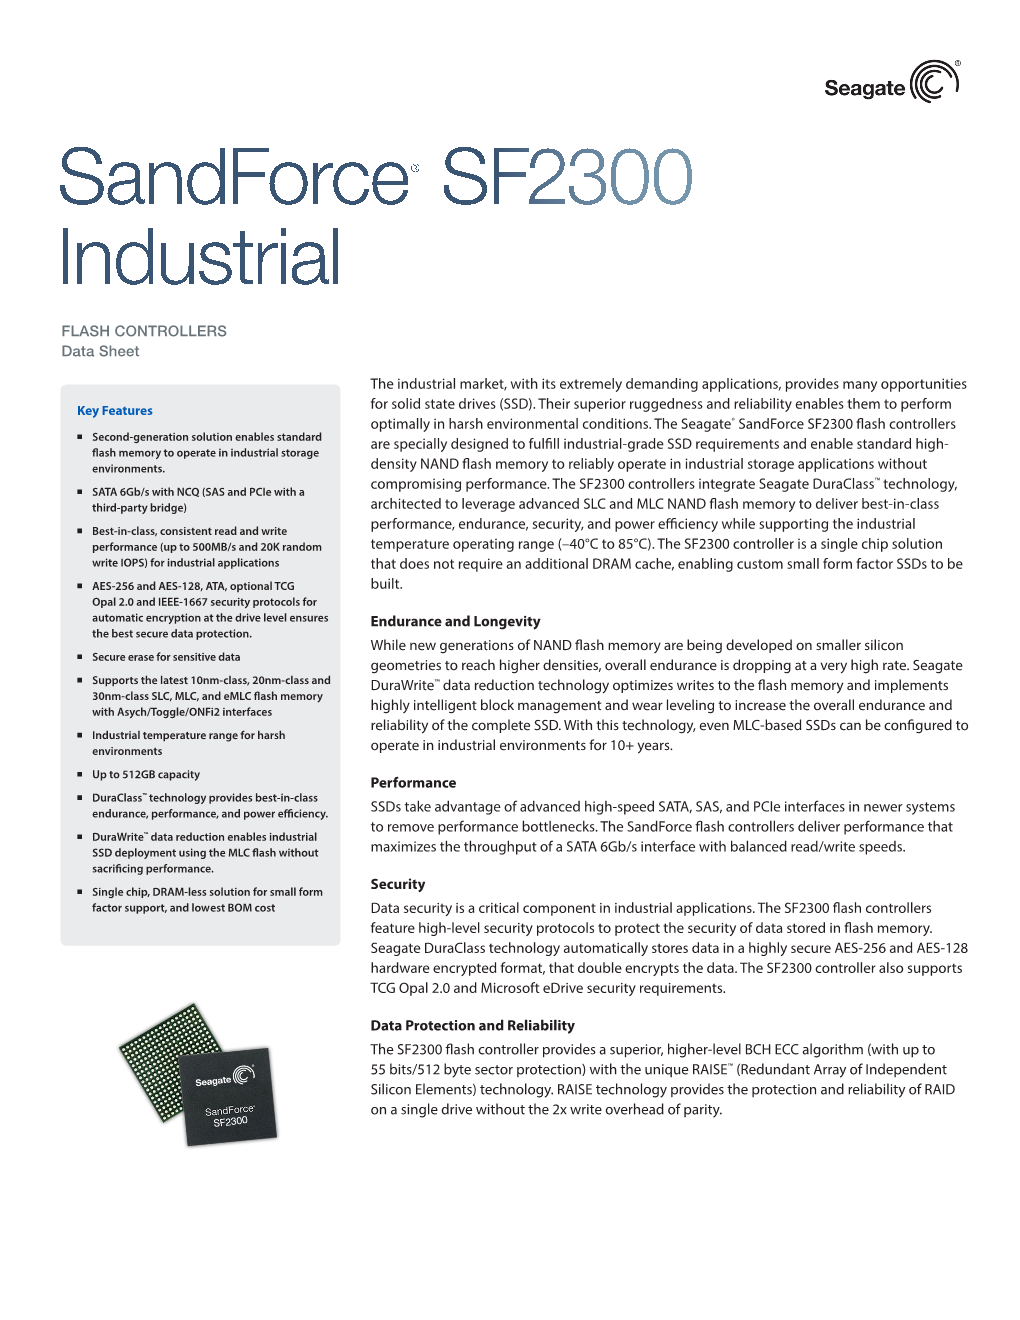 Sandforce® SF2300 Industrial